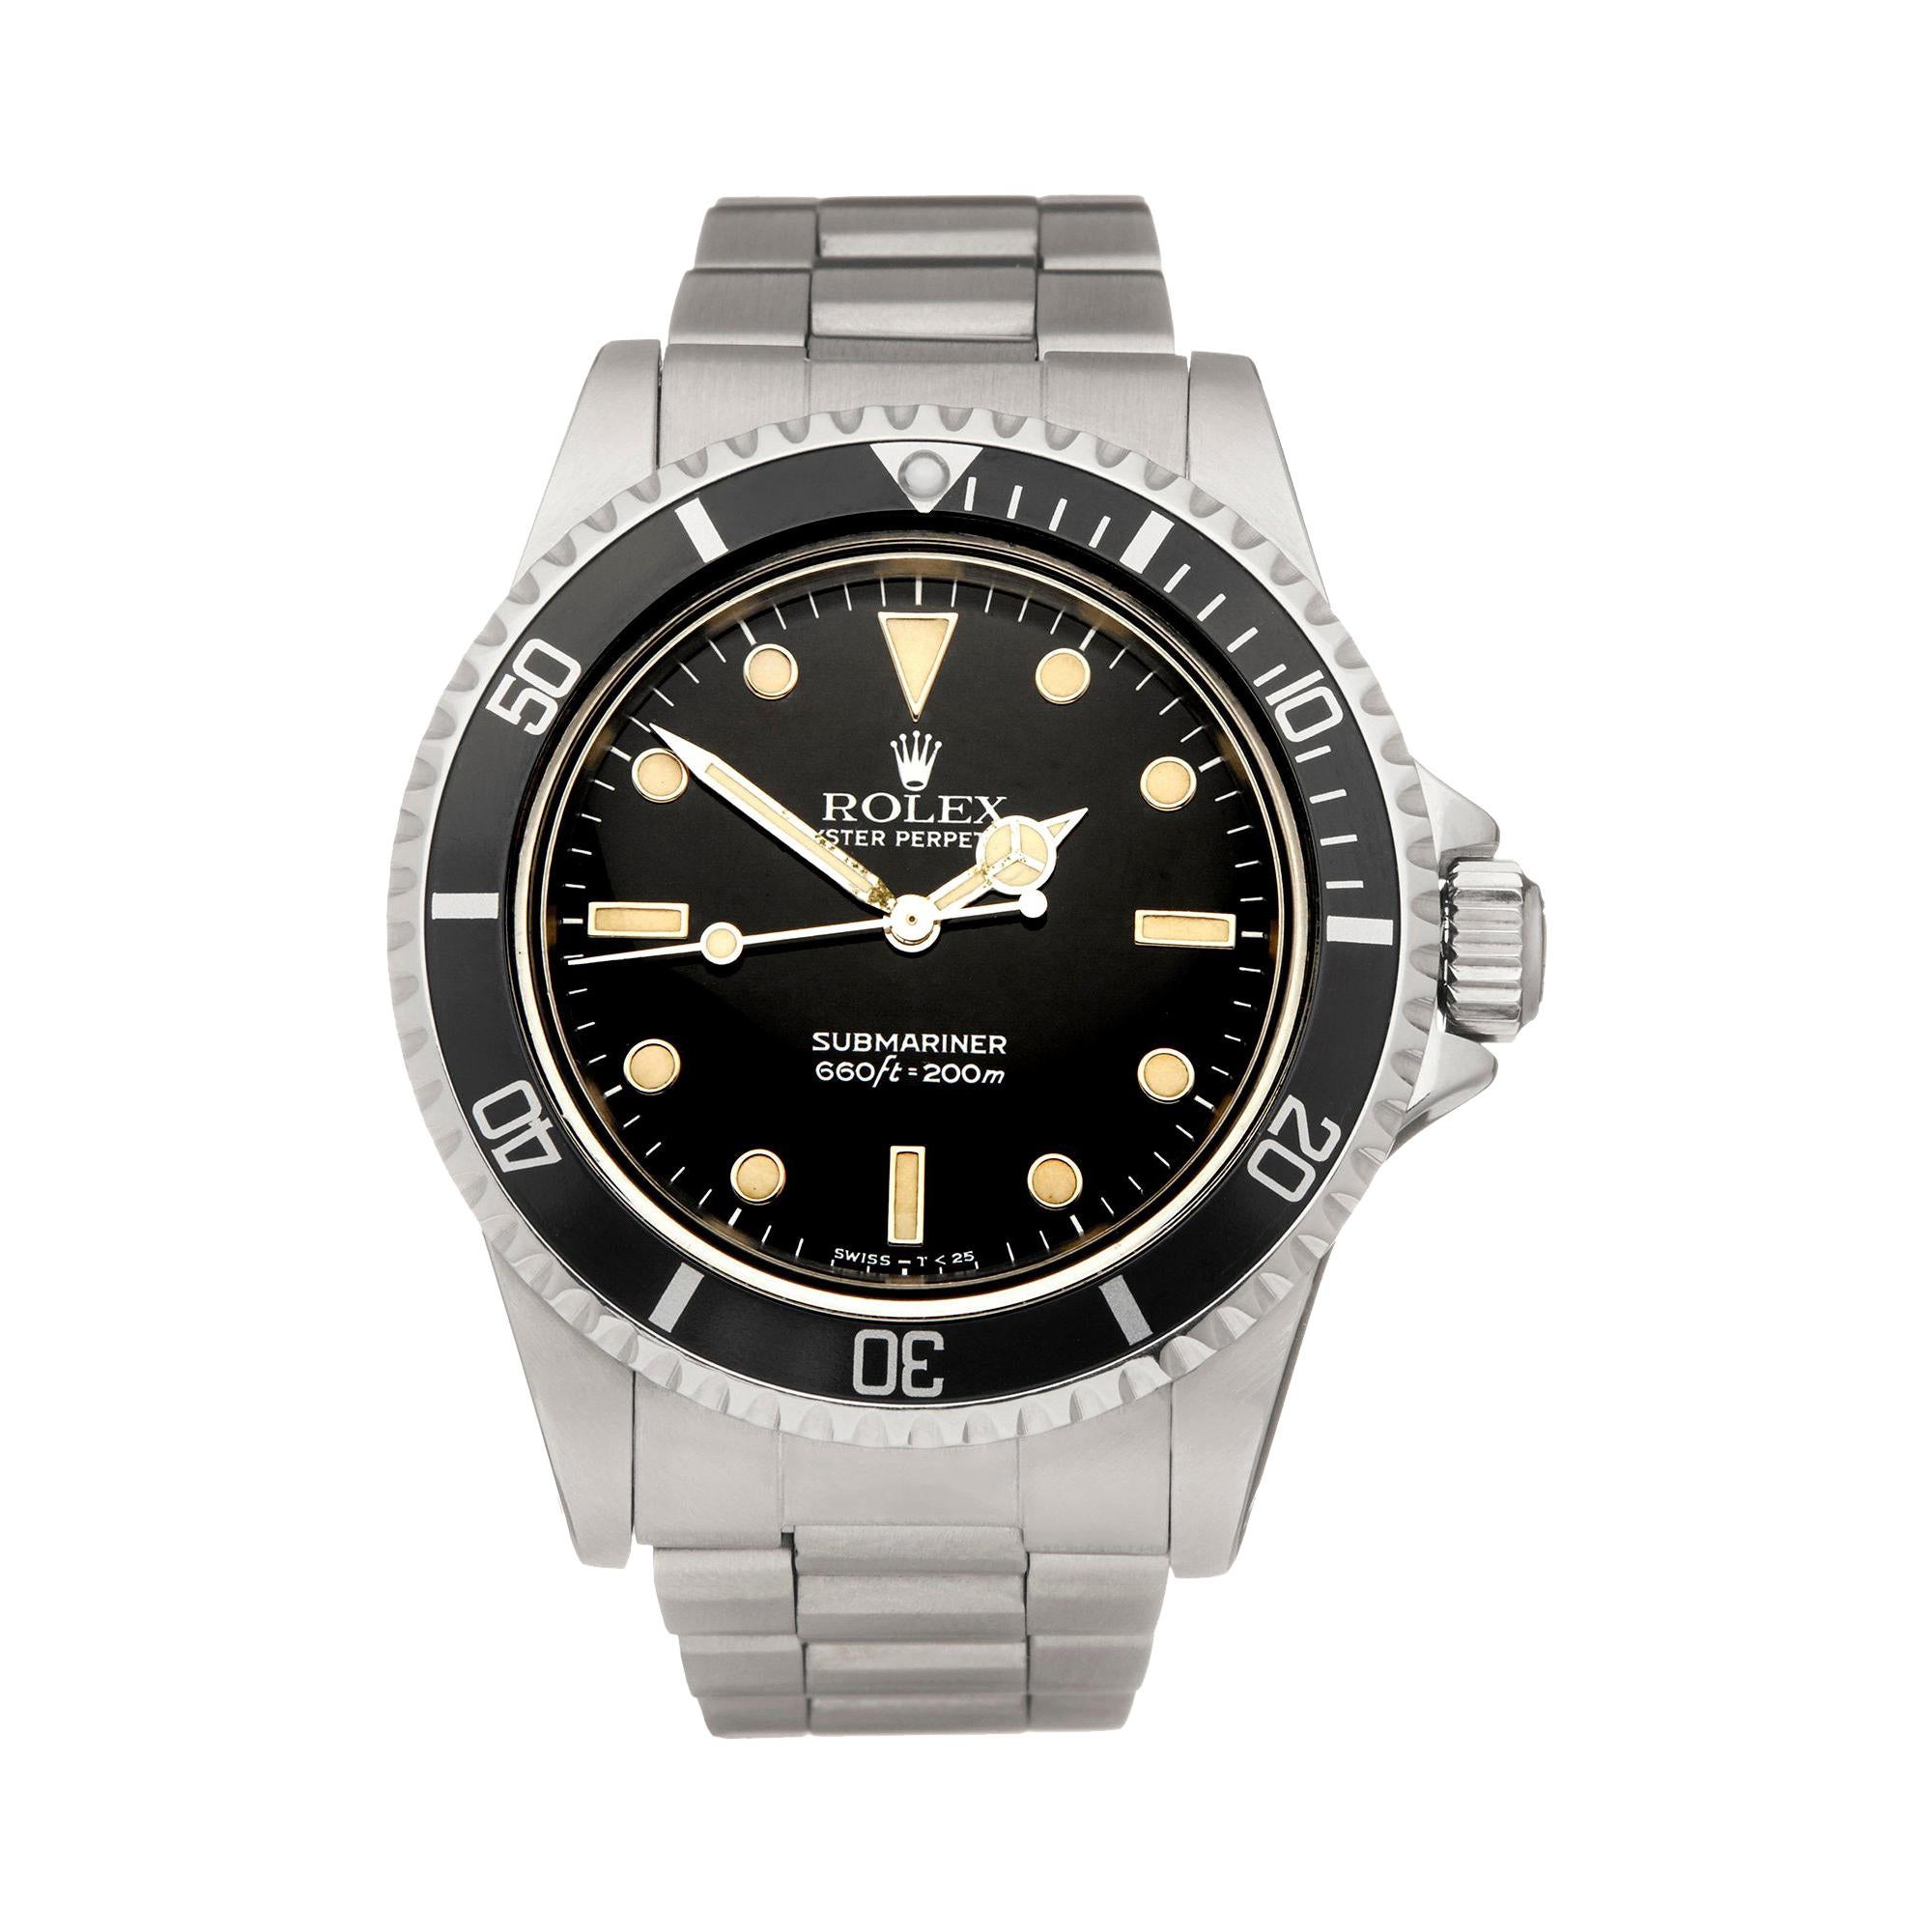 Rolex Submariner Non Date Stainless Steel 5513 Wristwatch